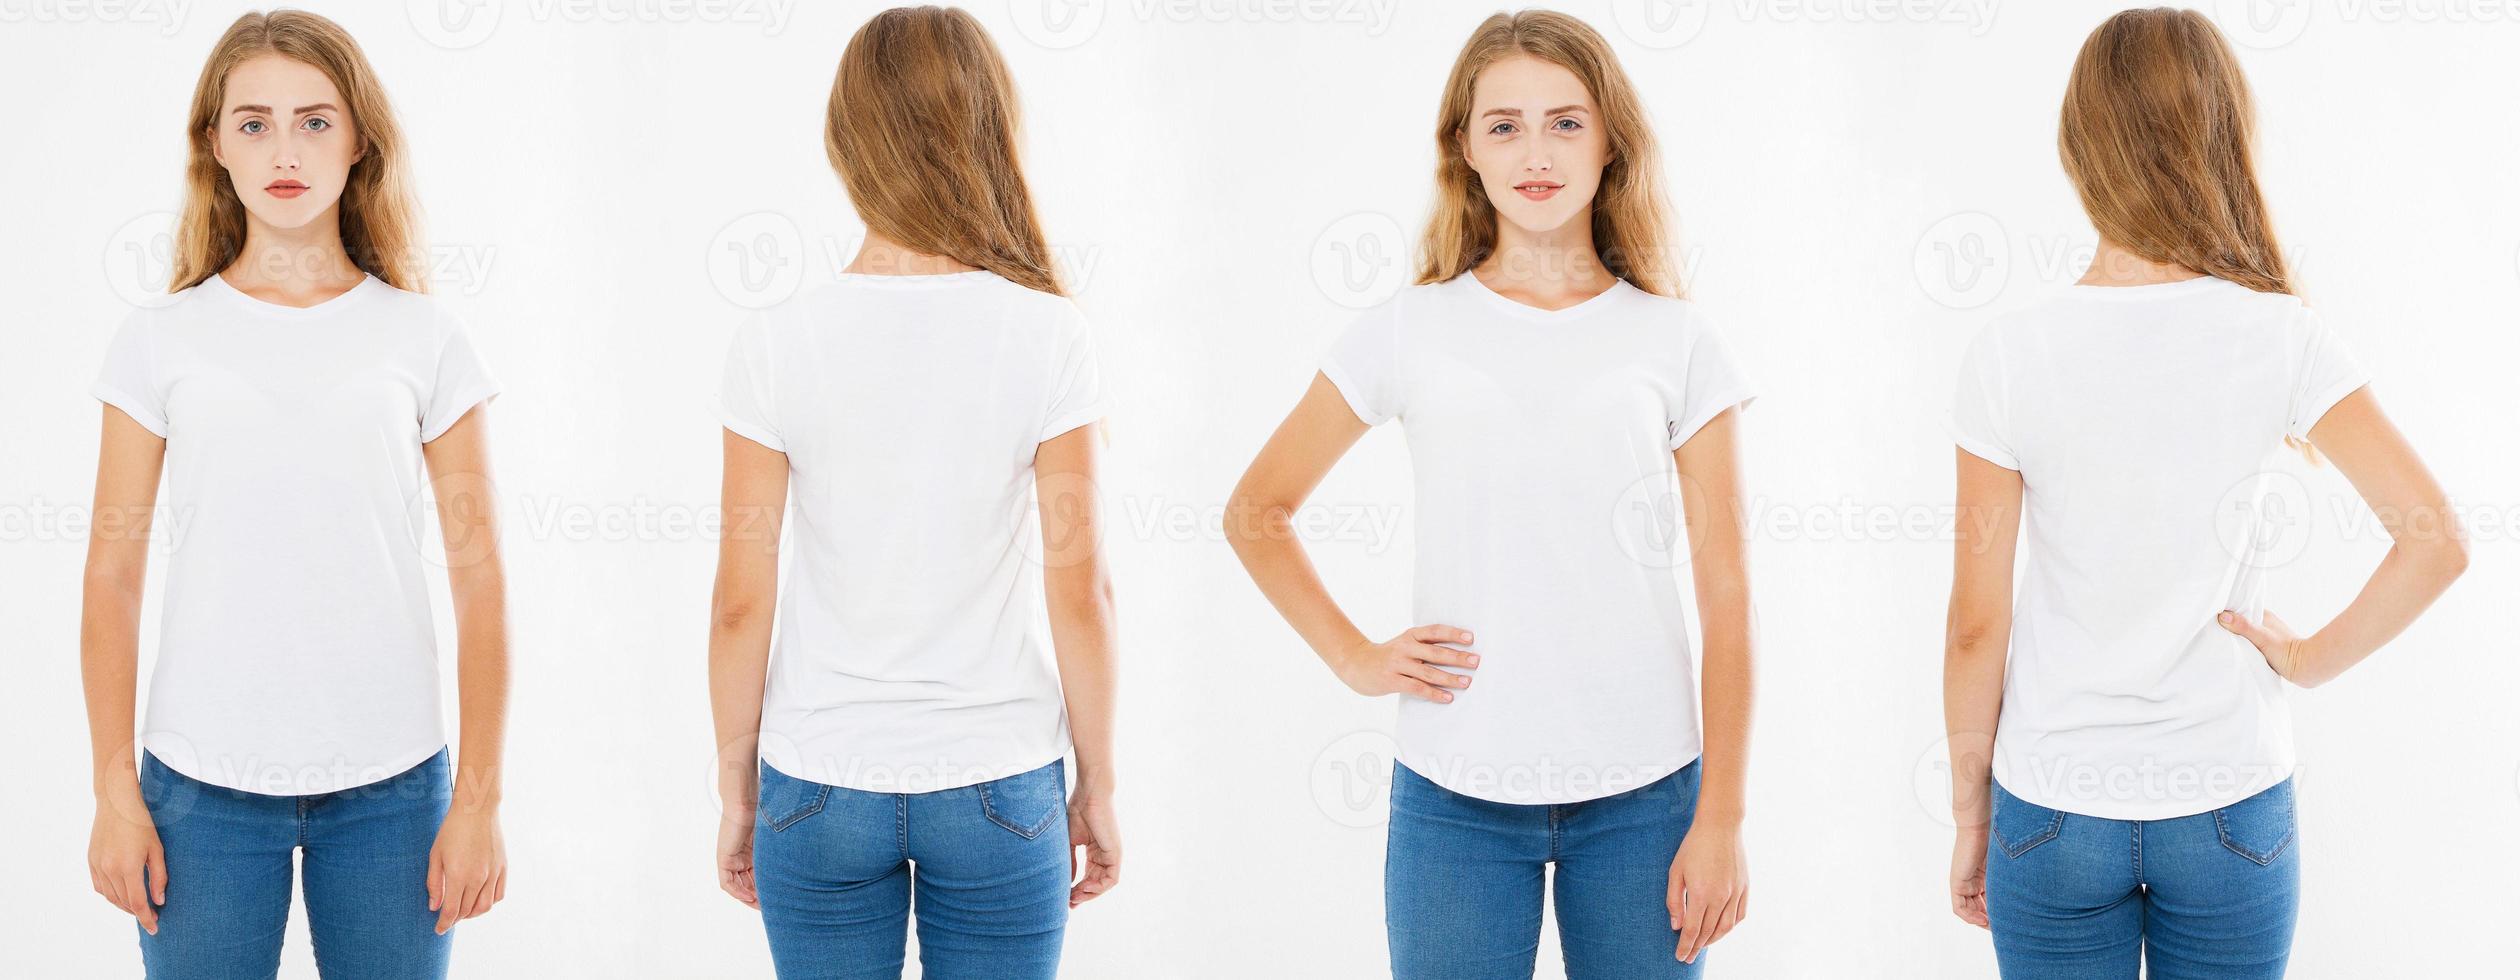 vit kvinnor t skjorta isolerat på vit bakgrund, tillbaka och främre visningar flickor i vit tshirt foto